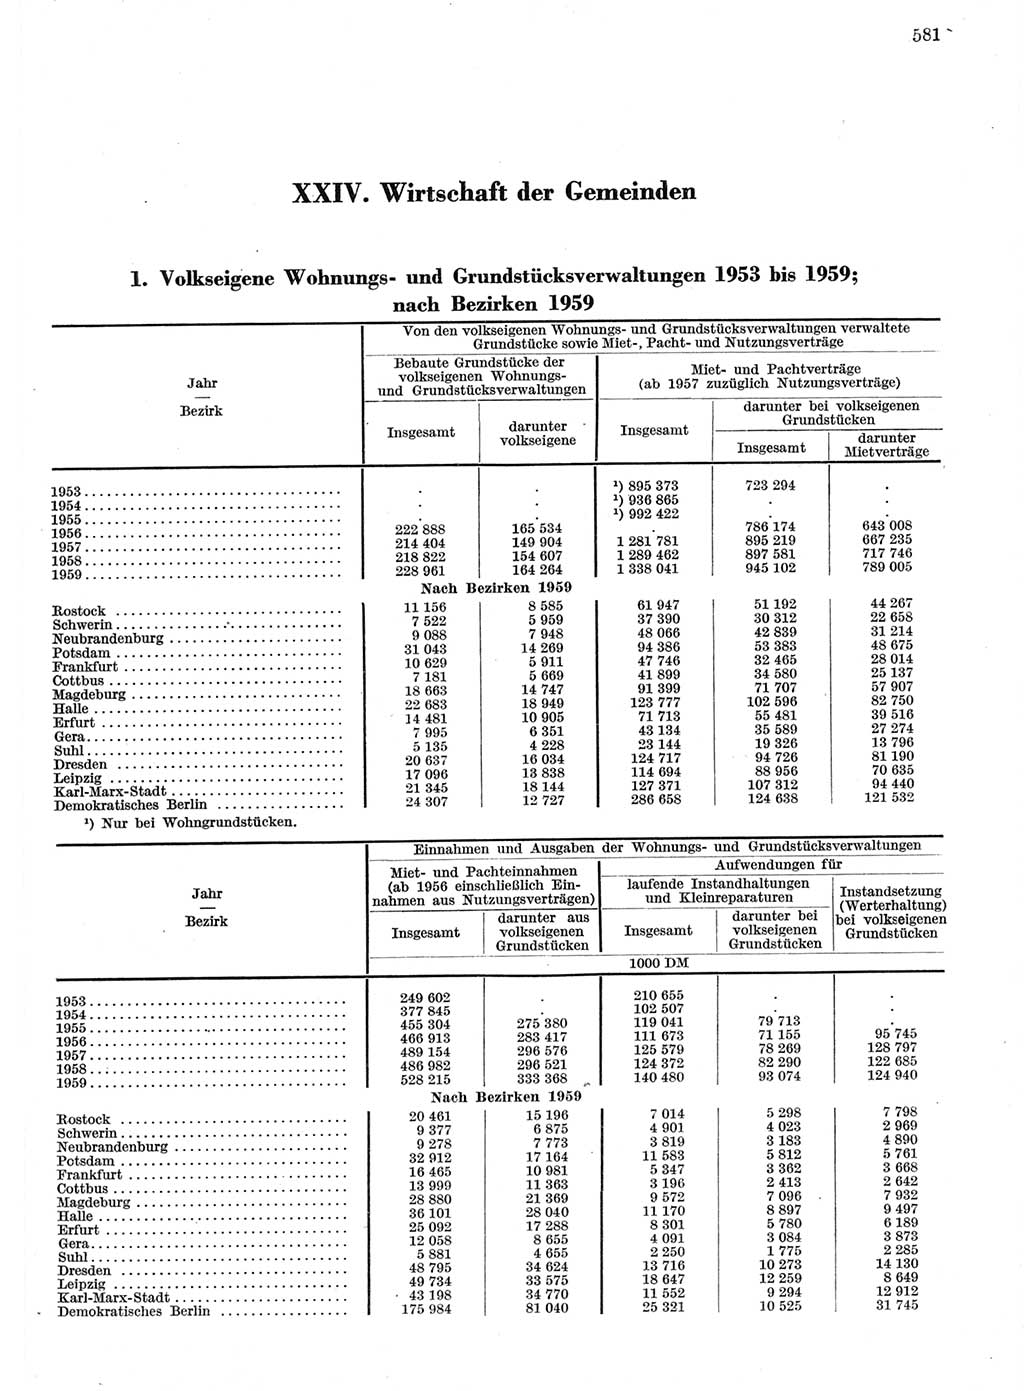 Statistisches Jahrbuch der Deutschen Demokratischen Republik (DDR) 1959, Seite 581 (Stat. Jb. DDR 1959, S. 581)